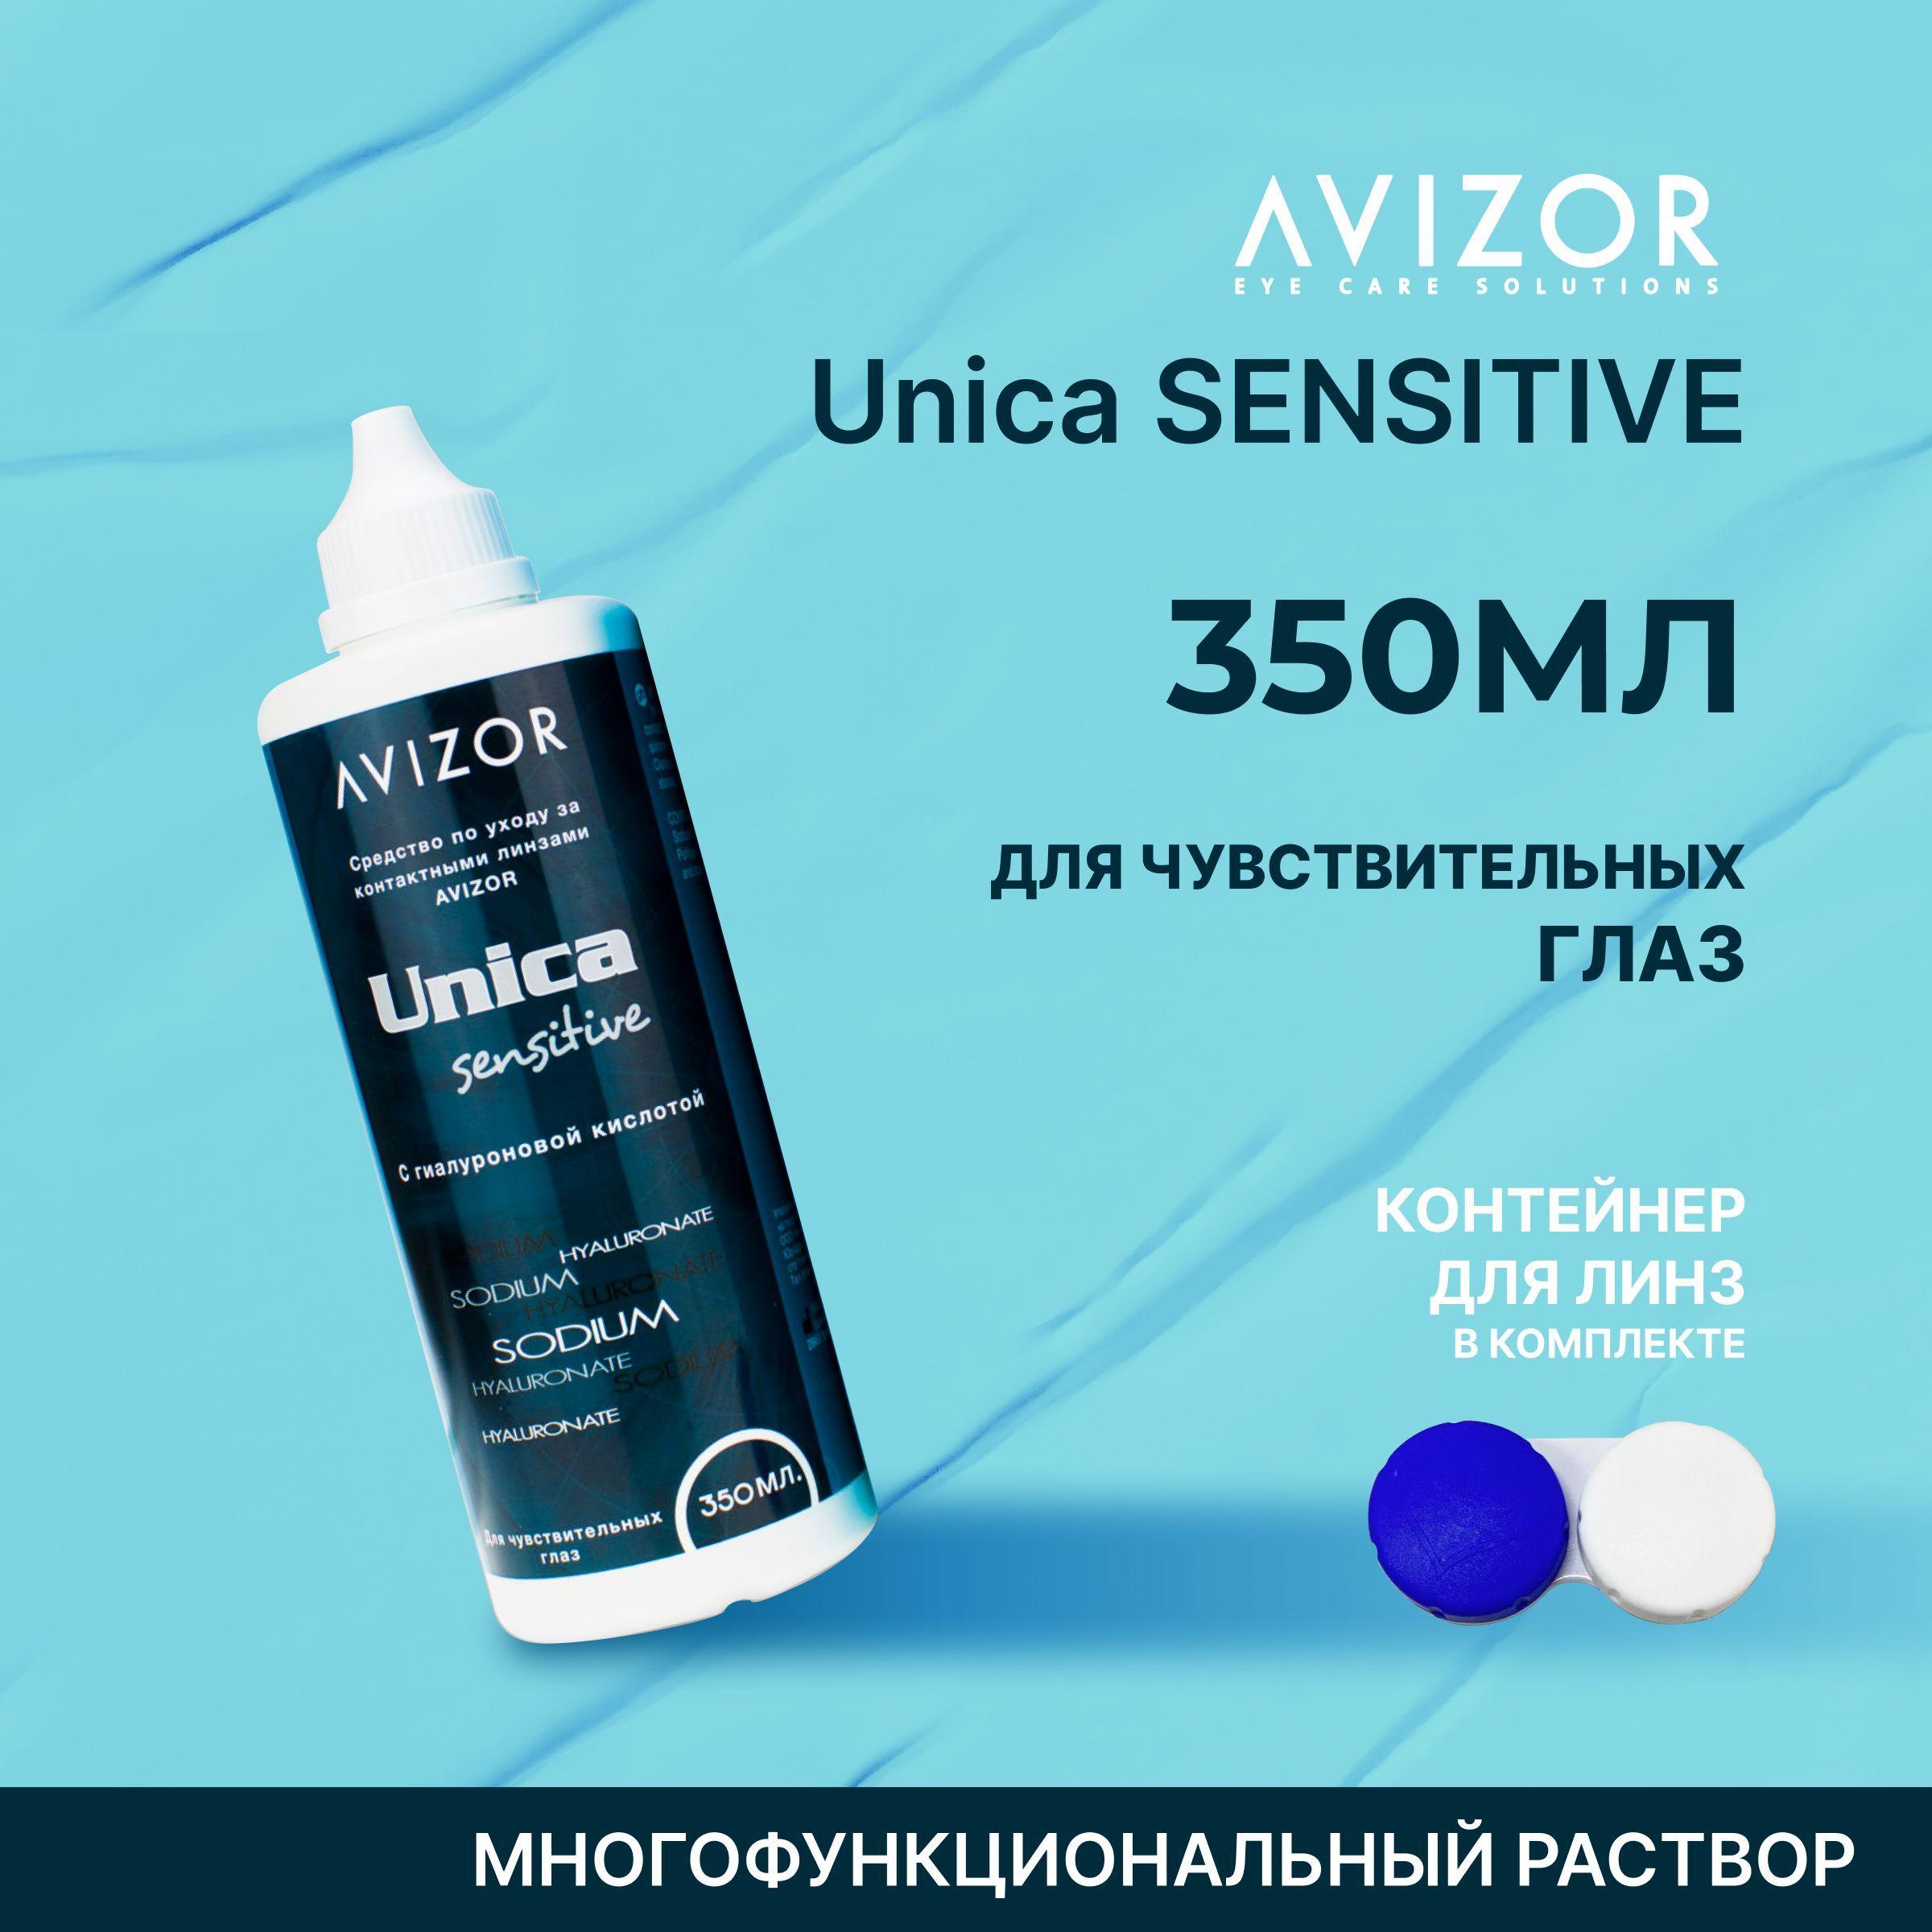 Многоцелевой раствор для контактных линз Avizor Unica Sensitive (Авизор Уника Сенситив), 350 мл с контейнером для линз